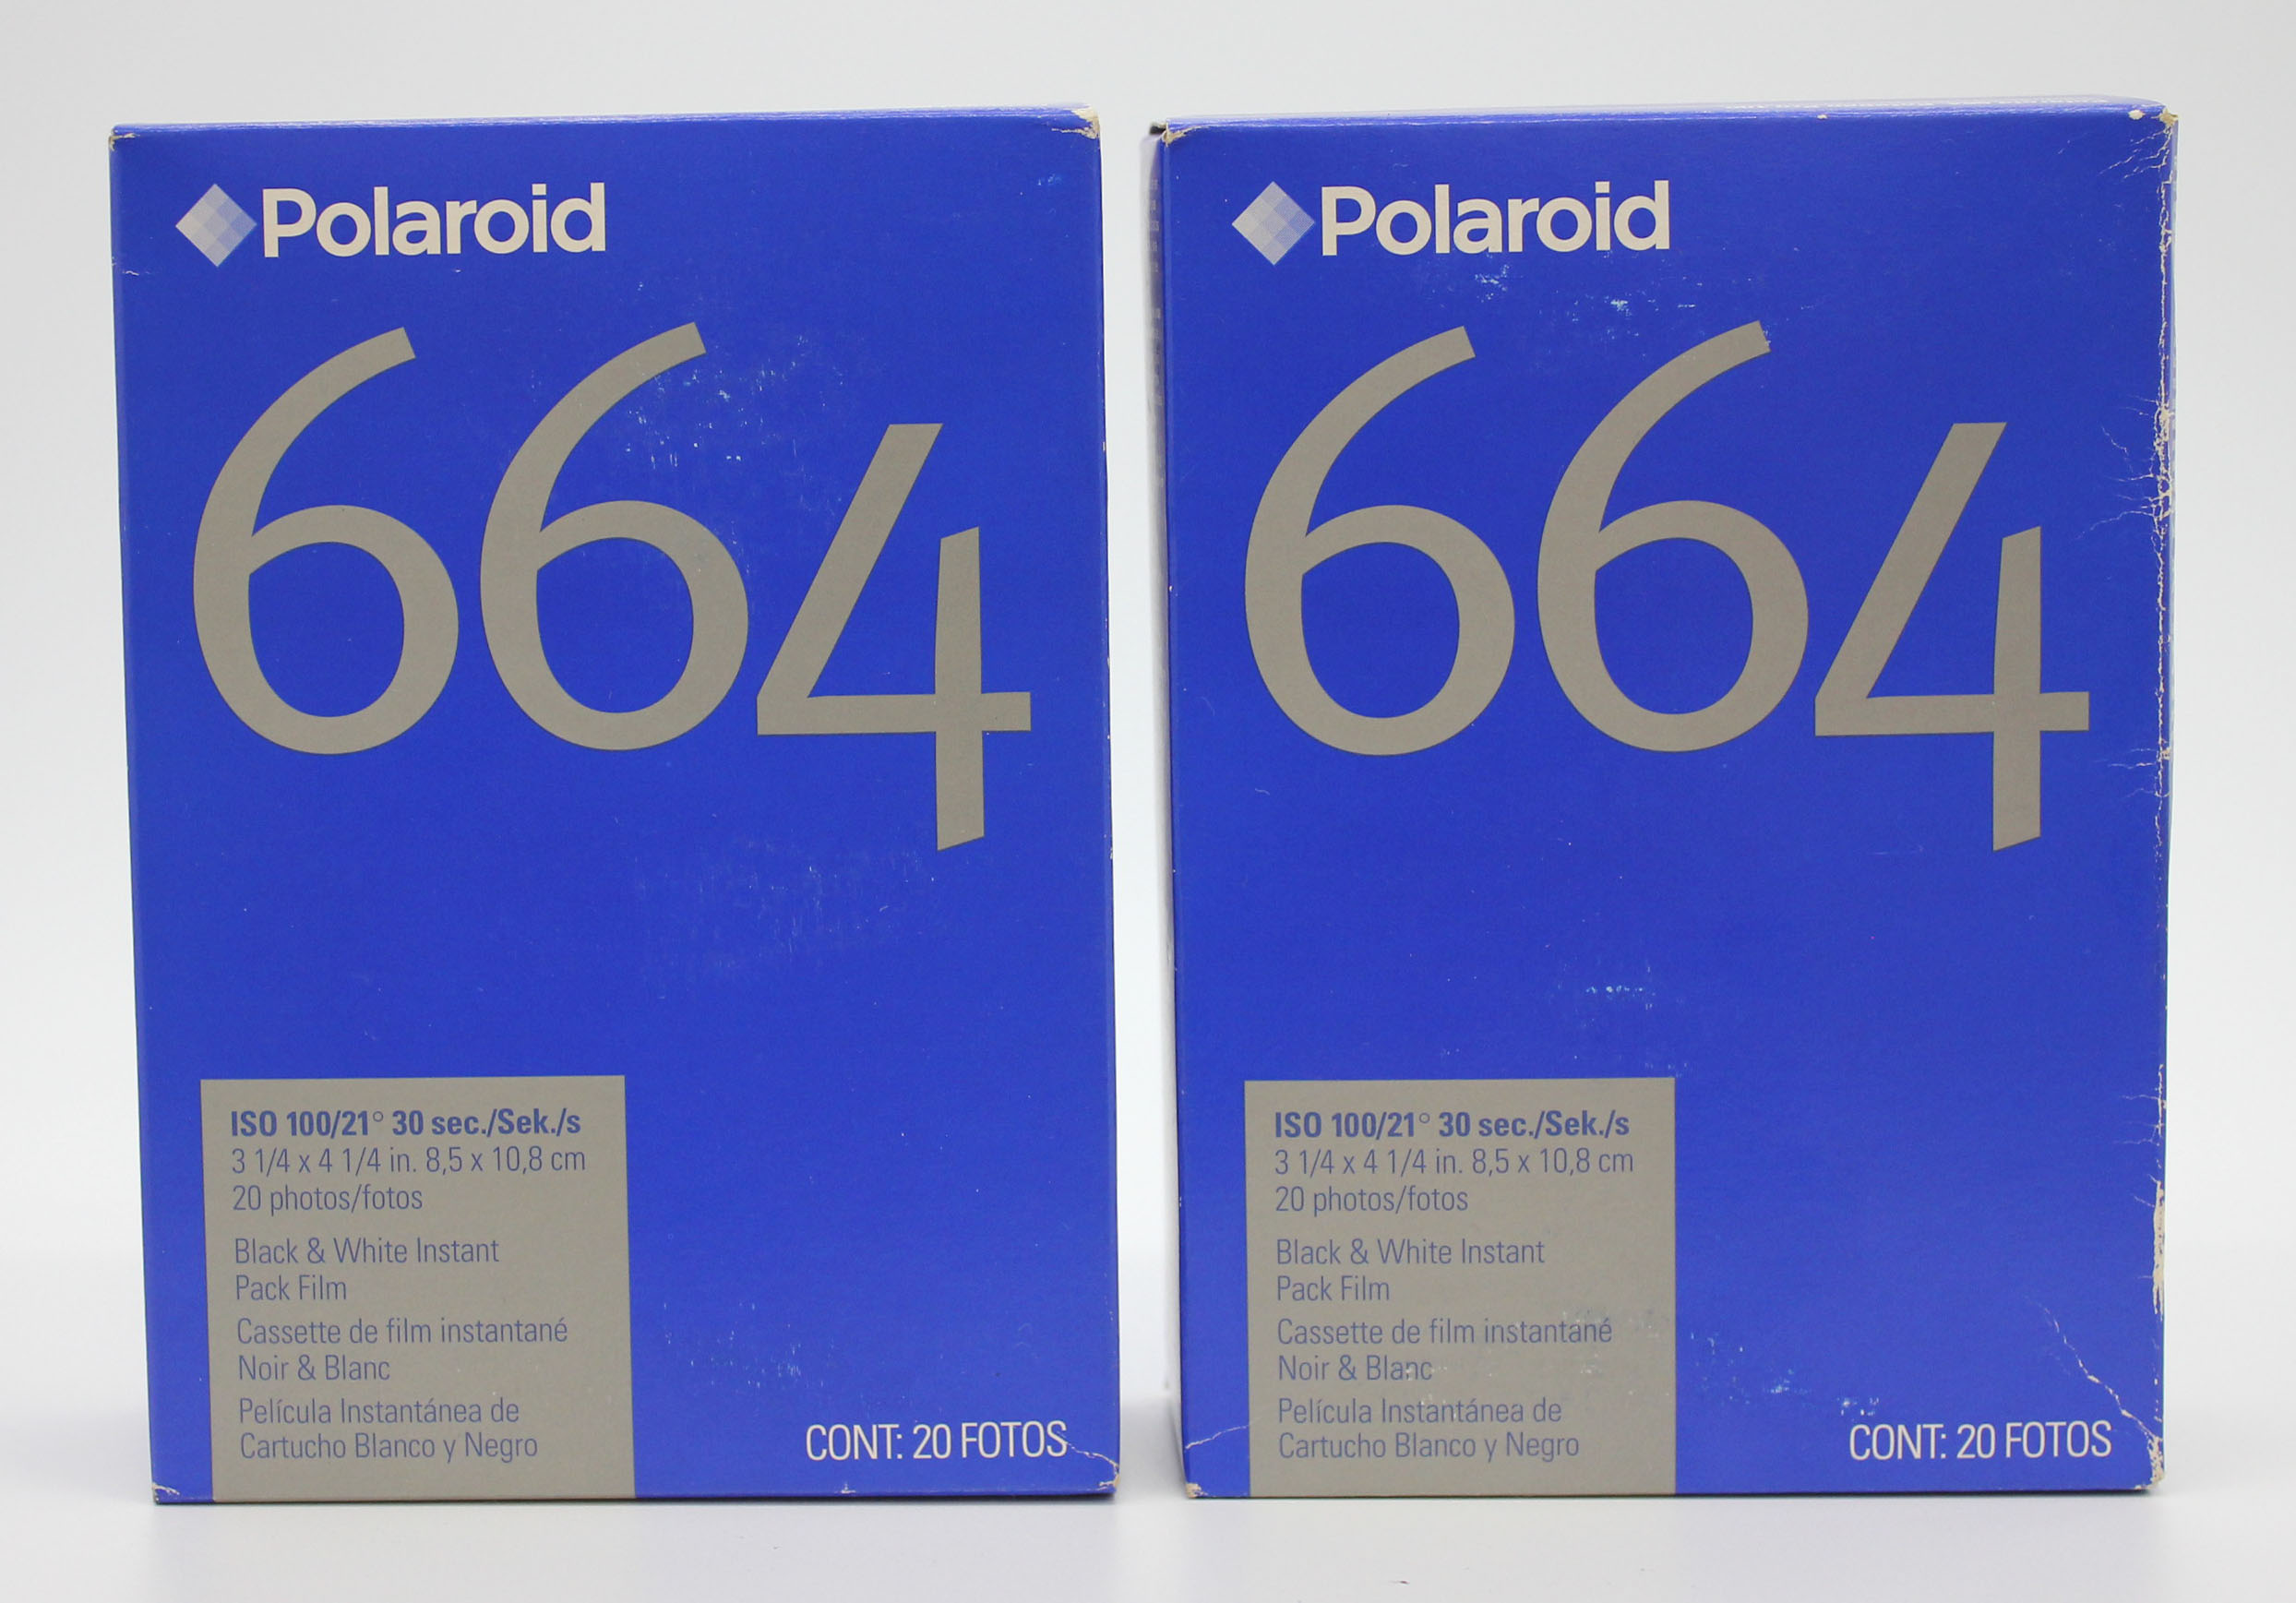 [New] Polaroid 664 B&W Black & White Instant Pack Film (2 Packs) Type 100 Expired 09/04 from Japan